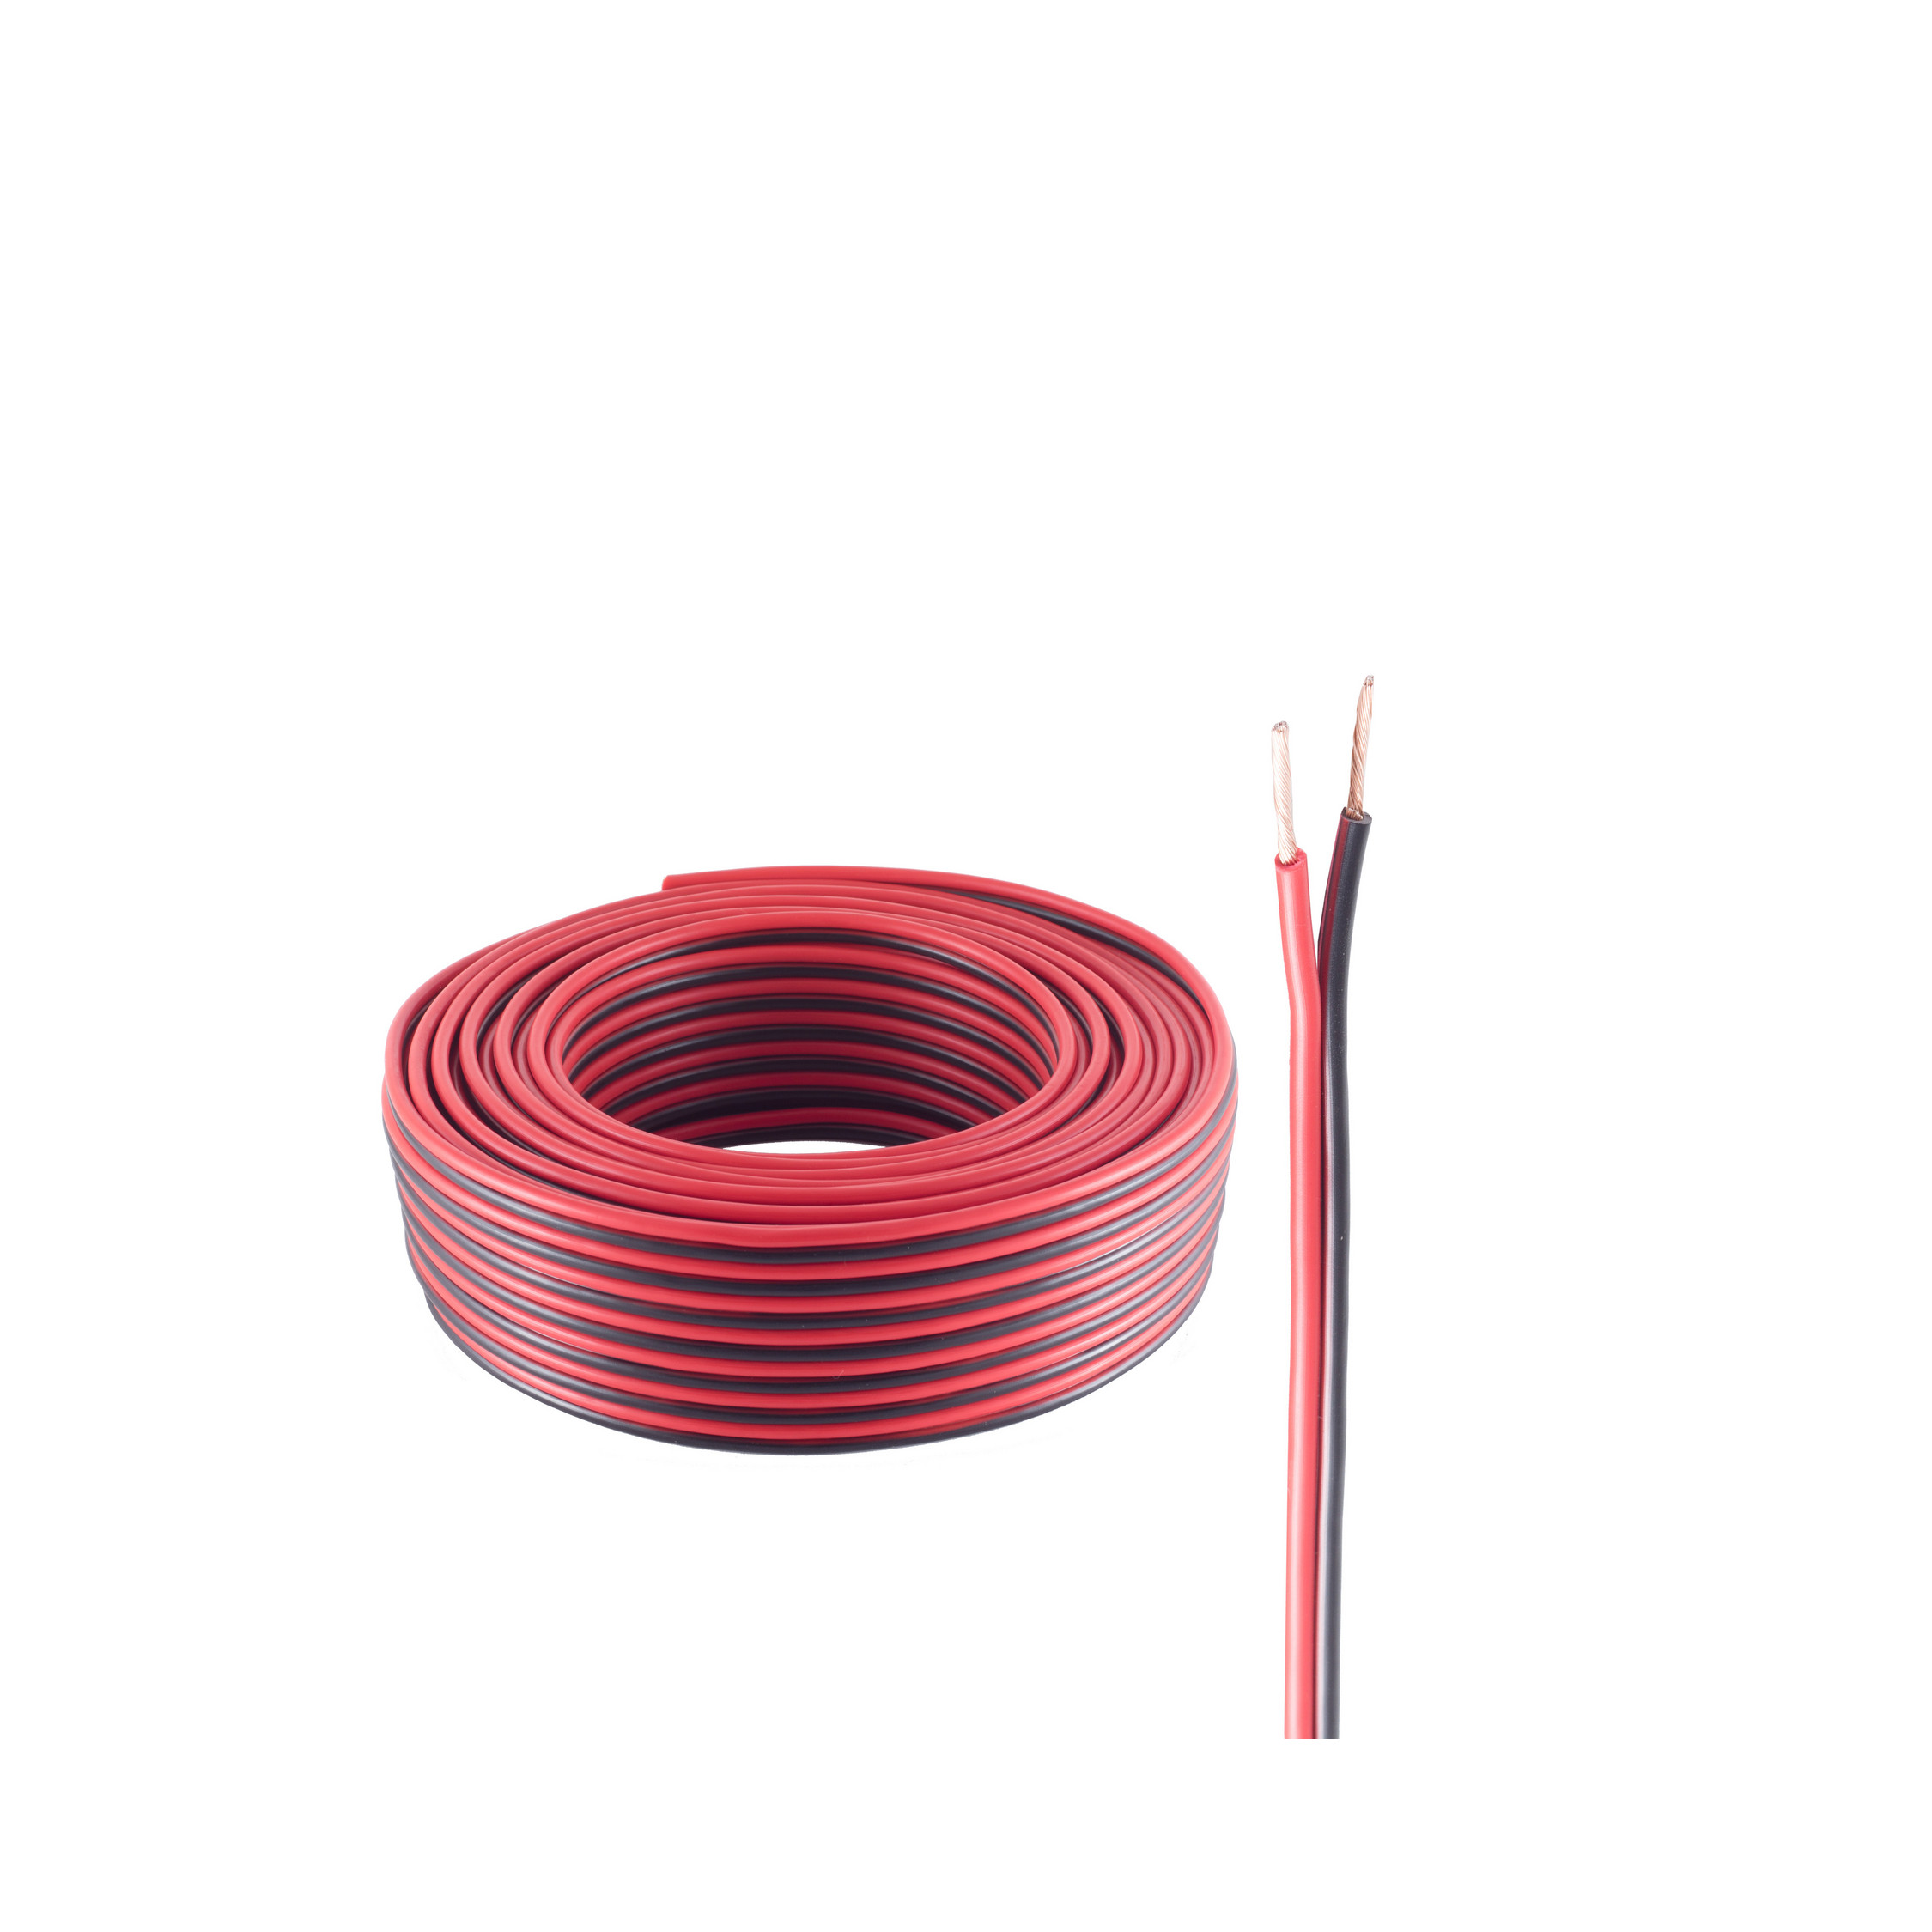 SHIVERPEAKS Lautsprecher rot/schwarz LS-Kabel m CCA 0,75mm² 24x0,2 25m, Kabel, 25